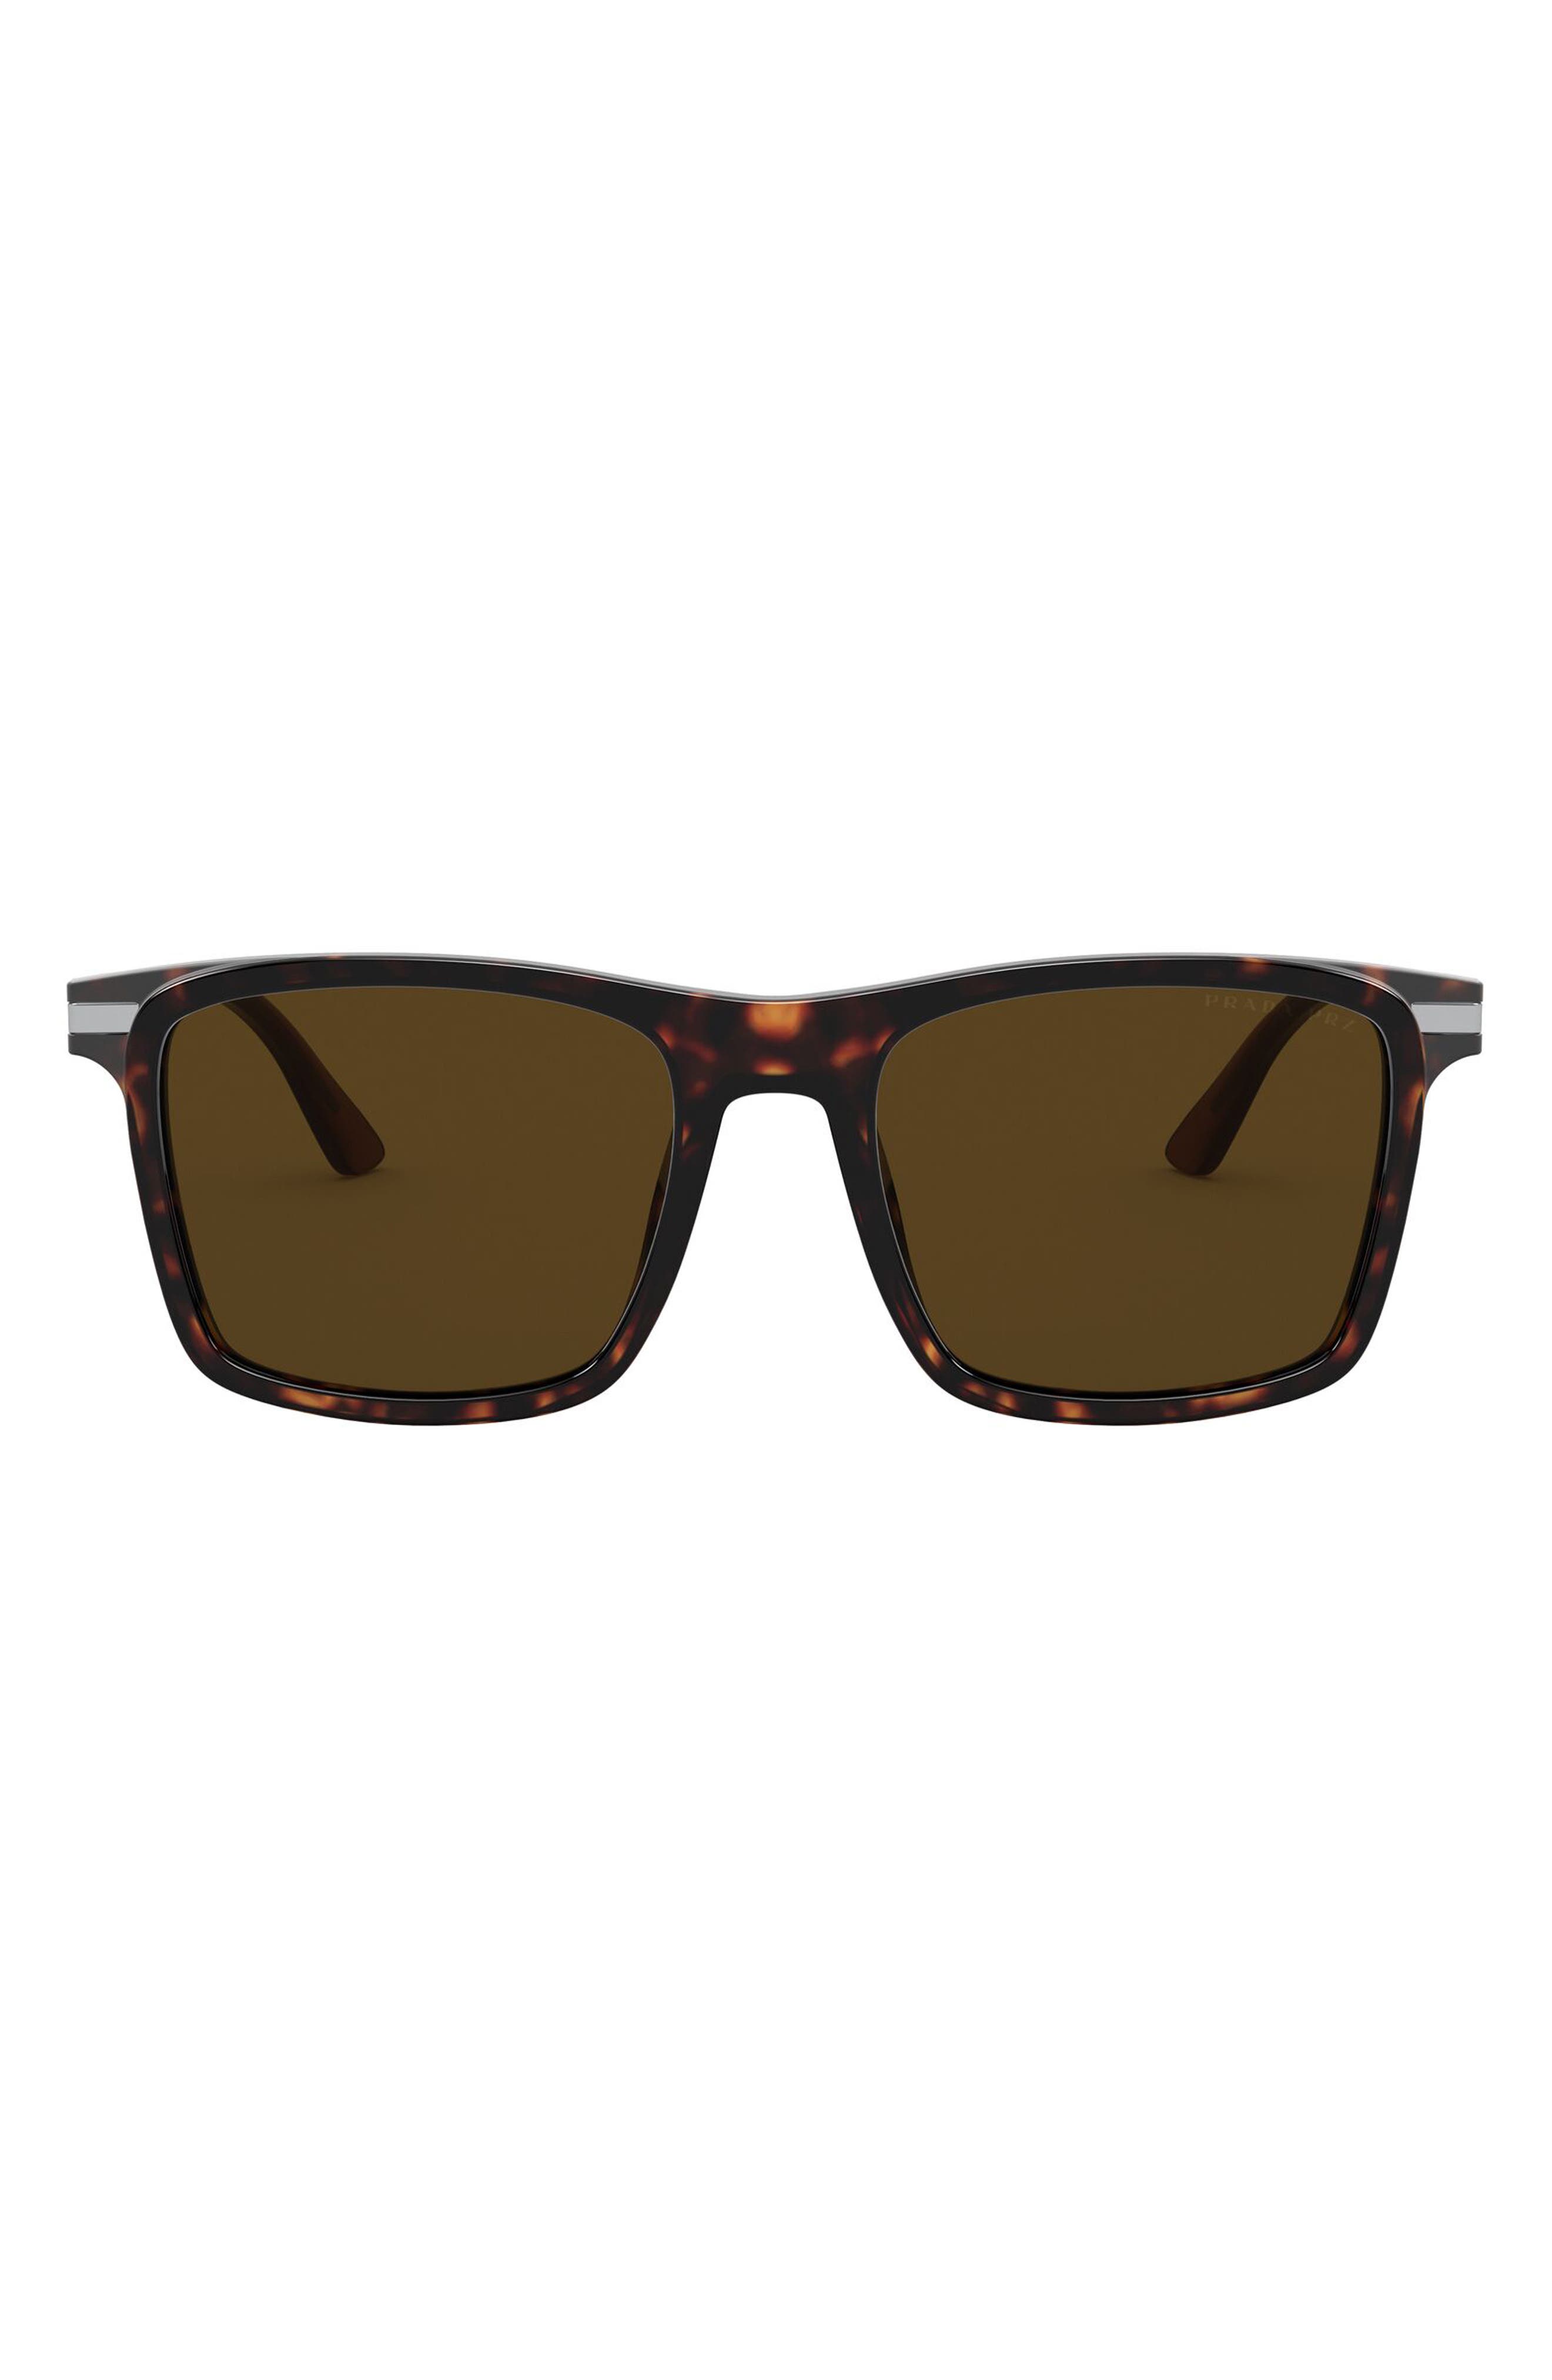 Prada 54mm Polarized Rectangular Sunglasses in Havana/Polarized Brown at Nordstrom